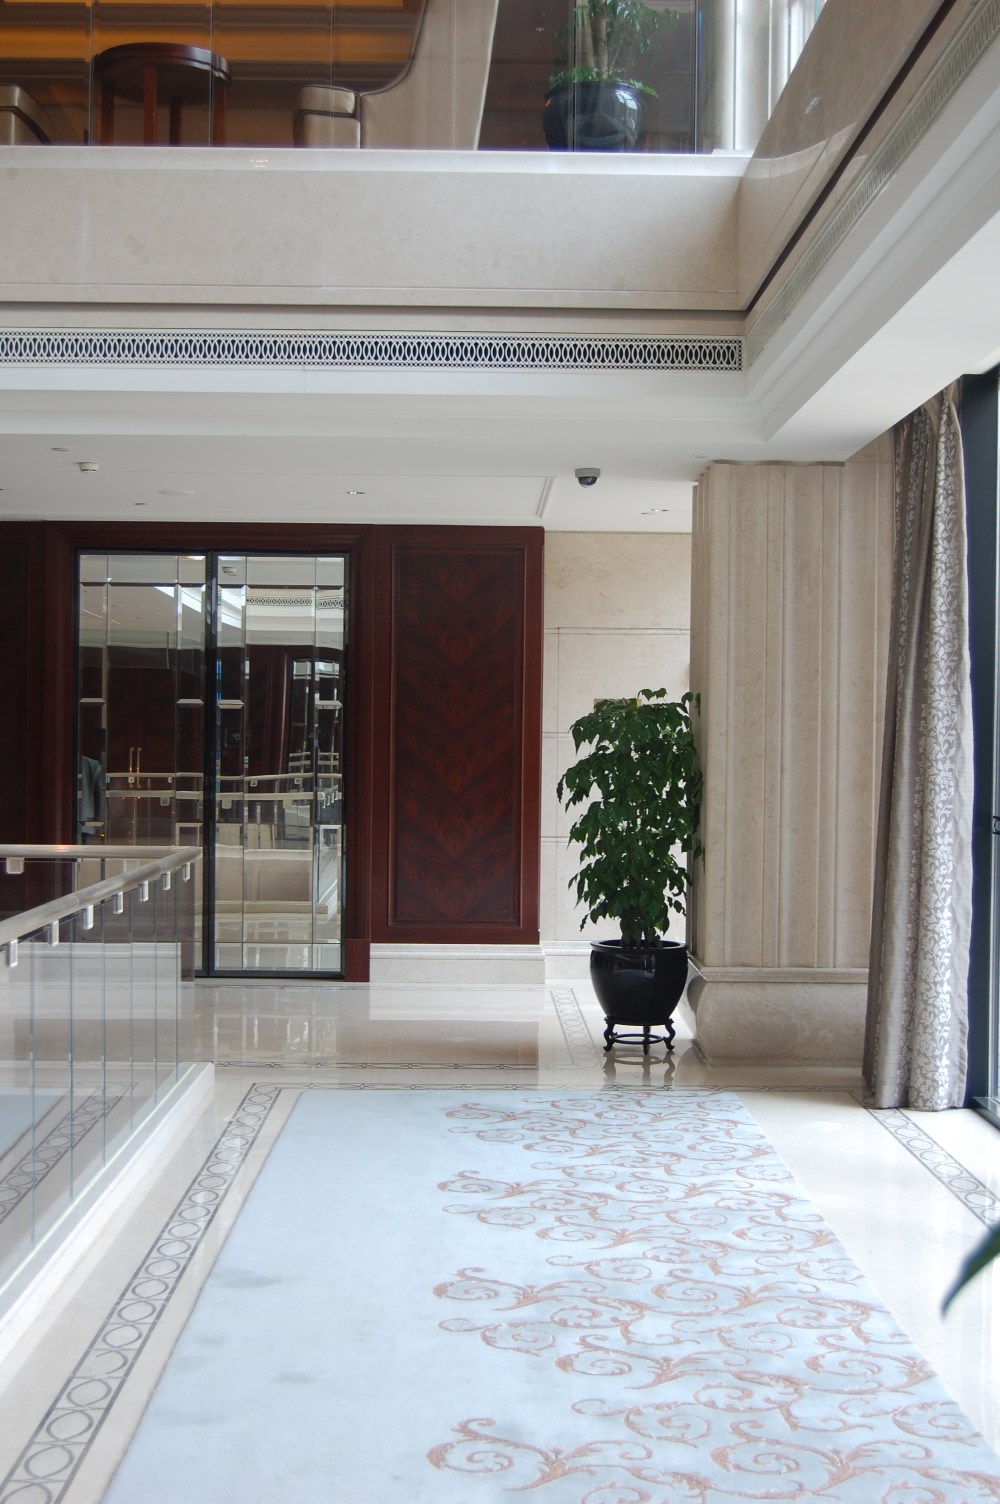 上海华尔道夫酒店(The Waldorf Astoria OnTheBund)(HBA)10.9第10页更新_DSC_0620.JPG